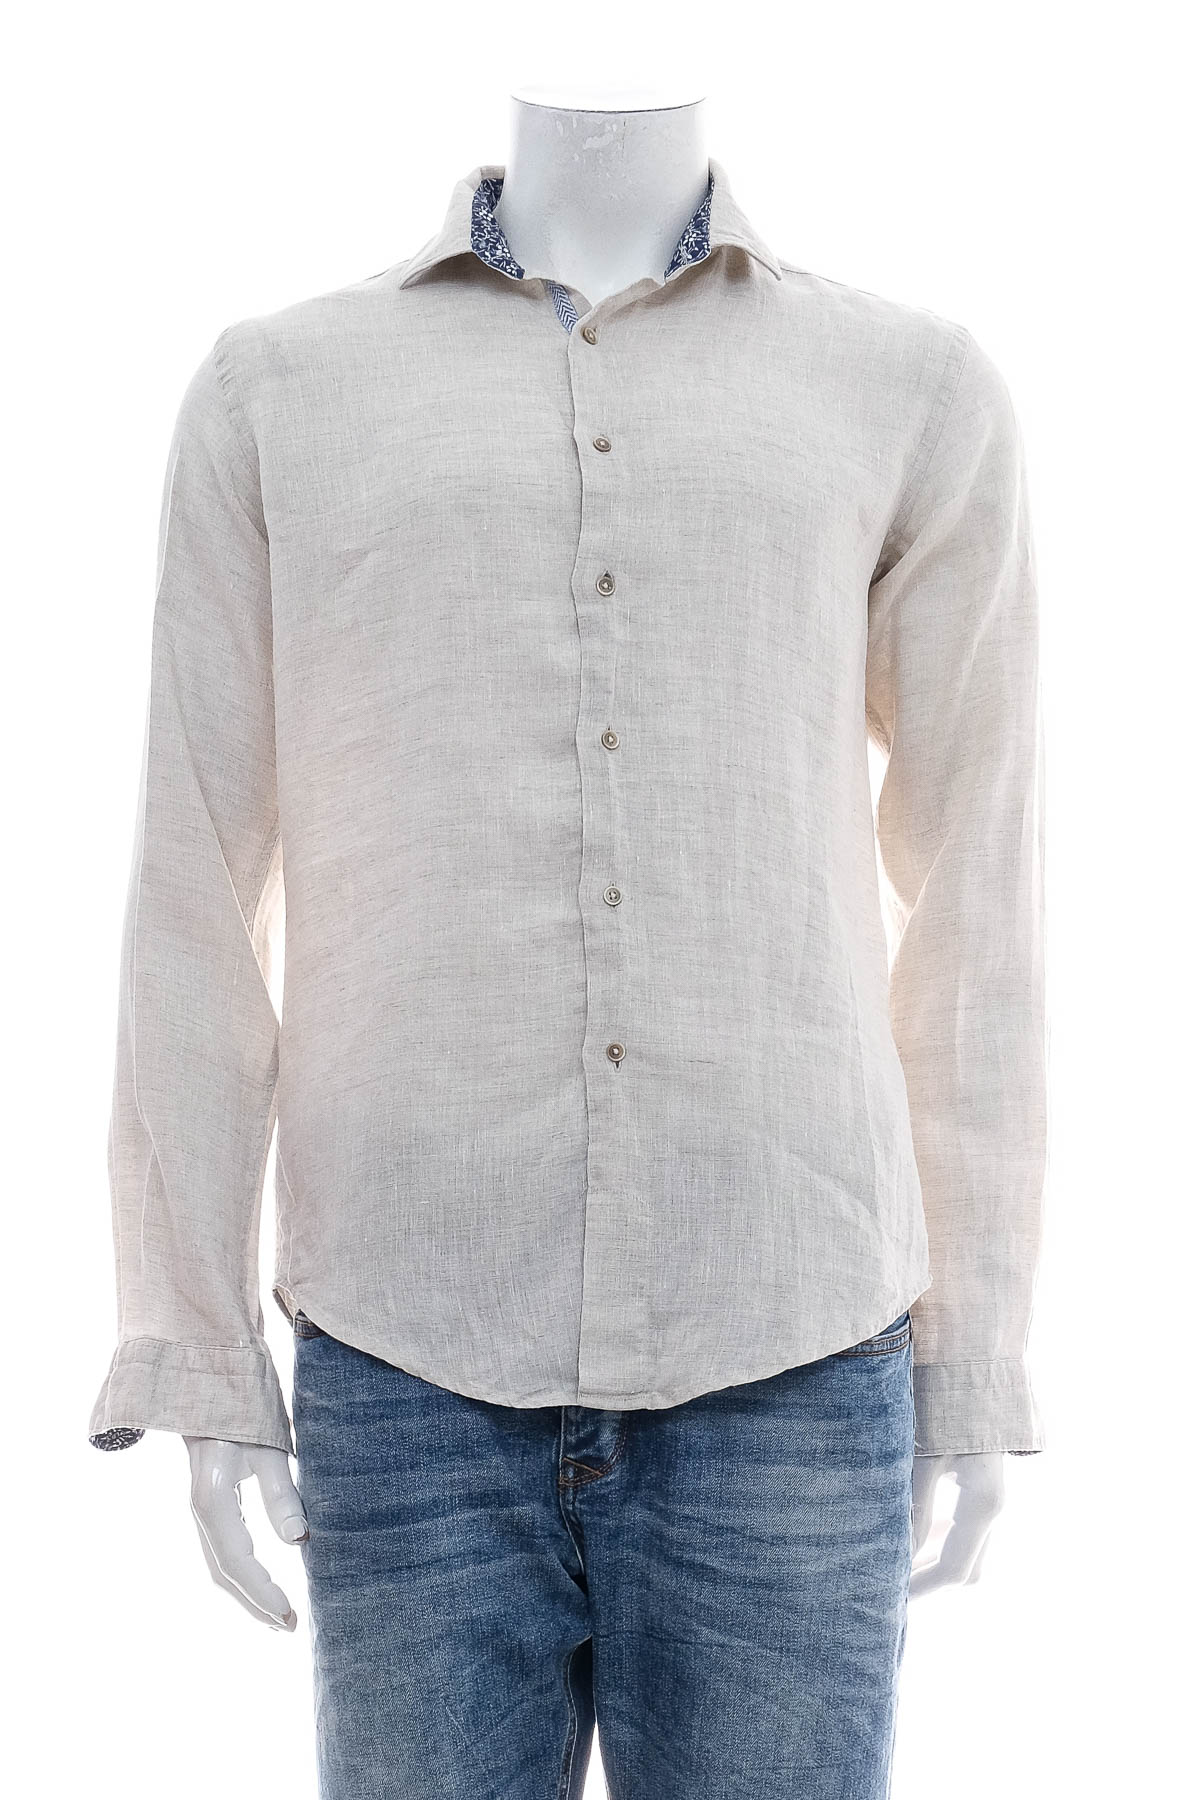 Ανδρικό πουκάμισο - ZARA Man - 0